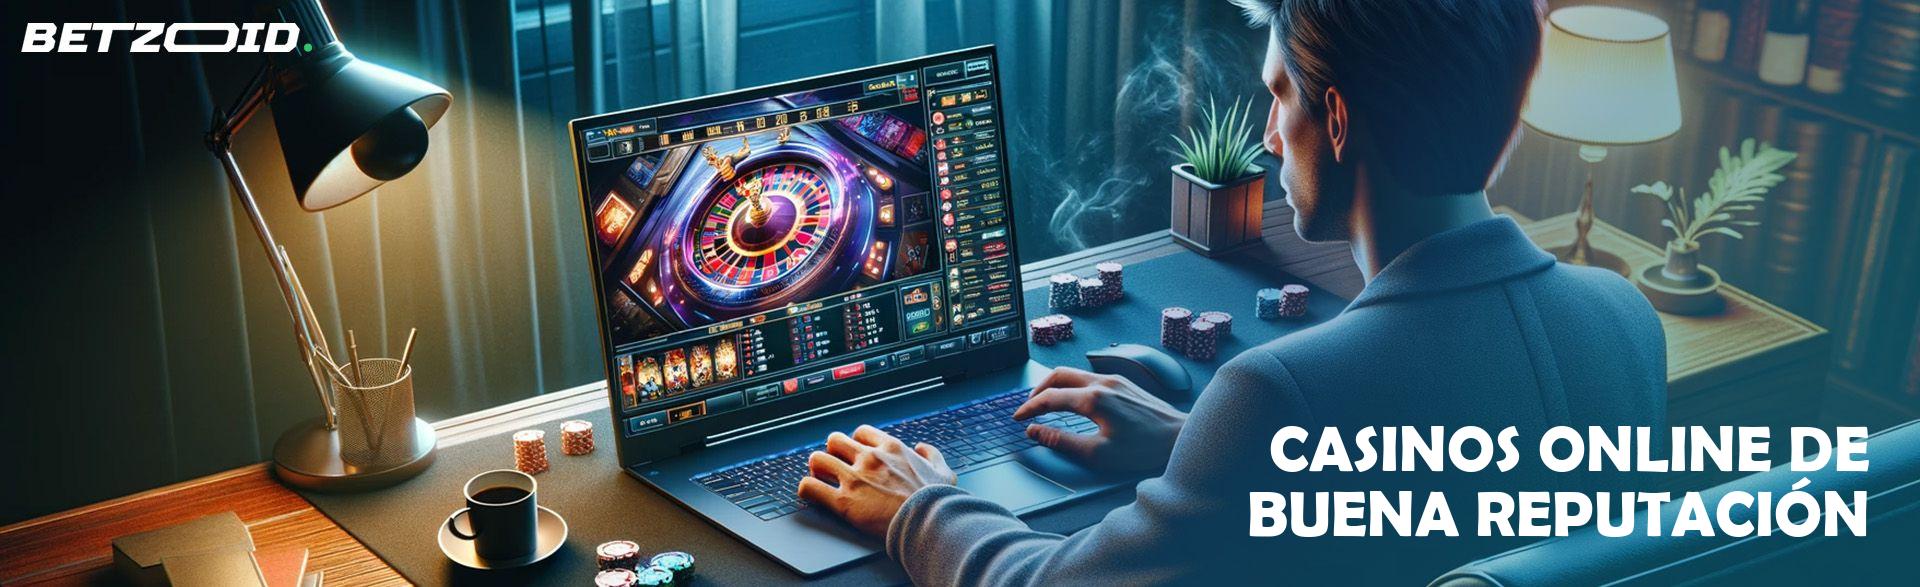 Casinos Online de Buena Reputación.